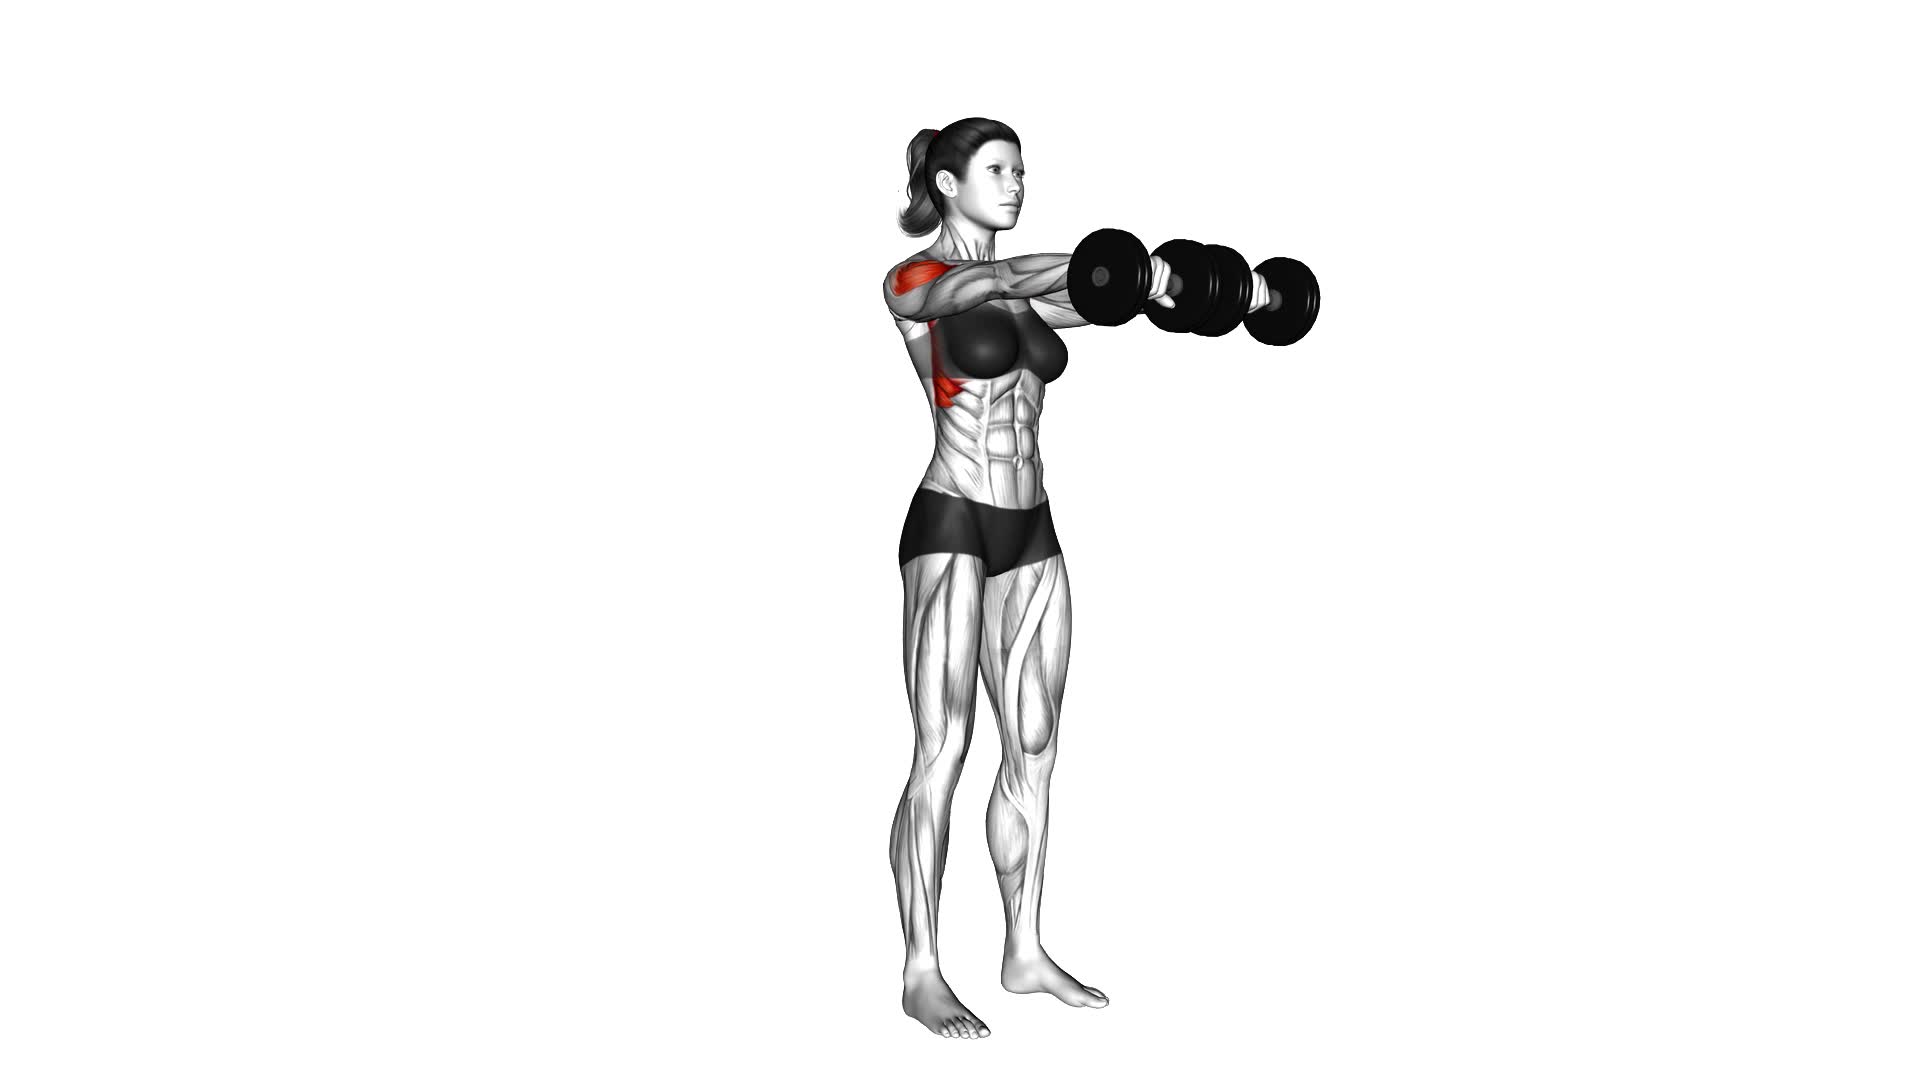 Dumbbell Front Raise (female) - Video Exercise Guide & Tips